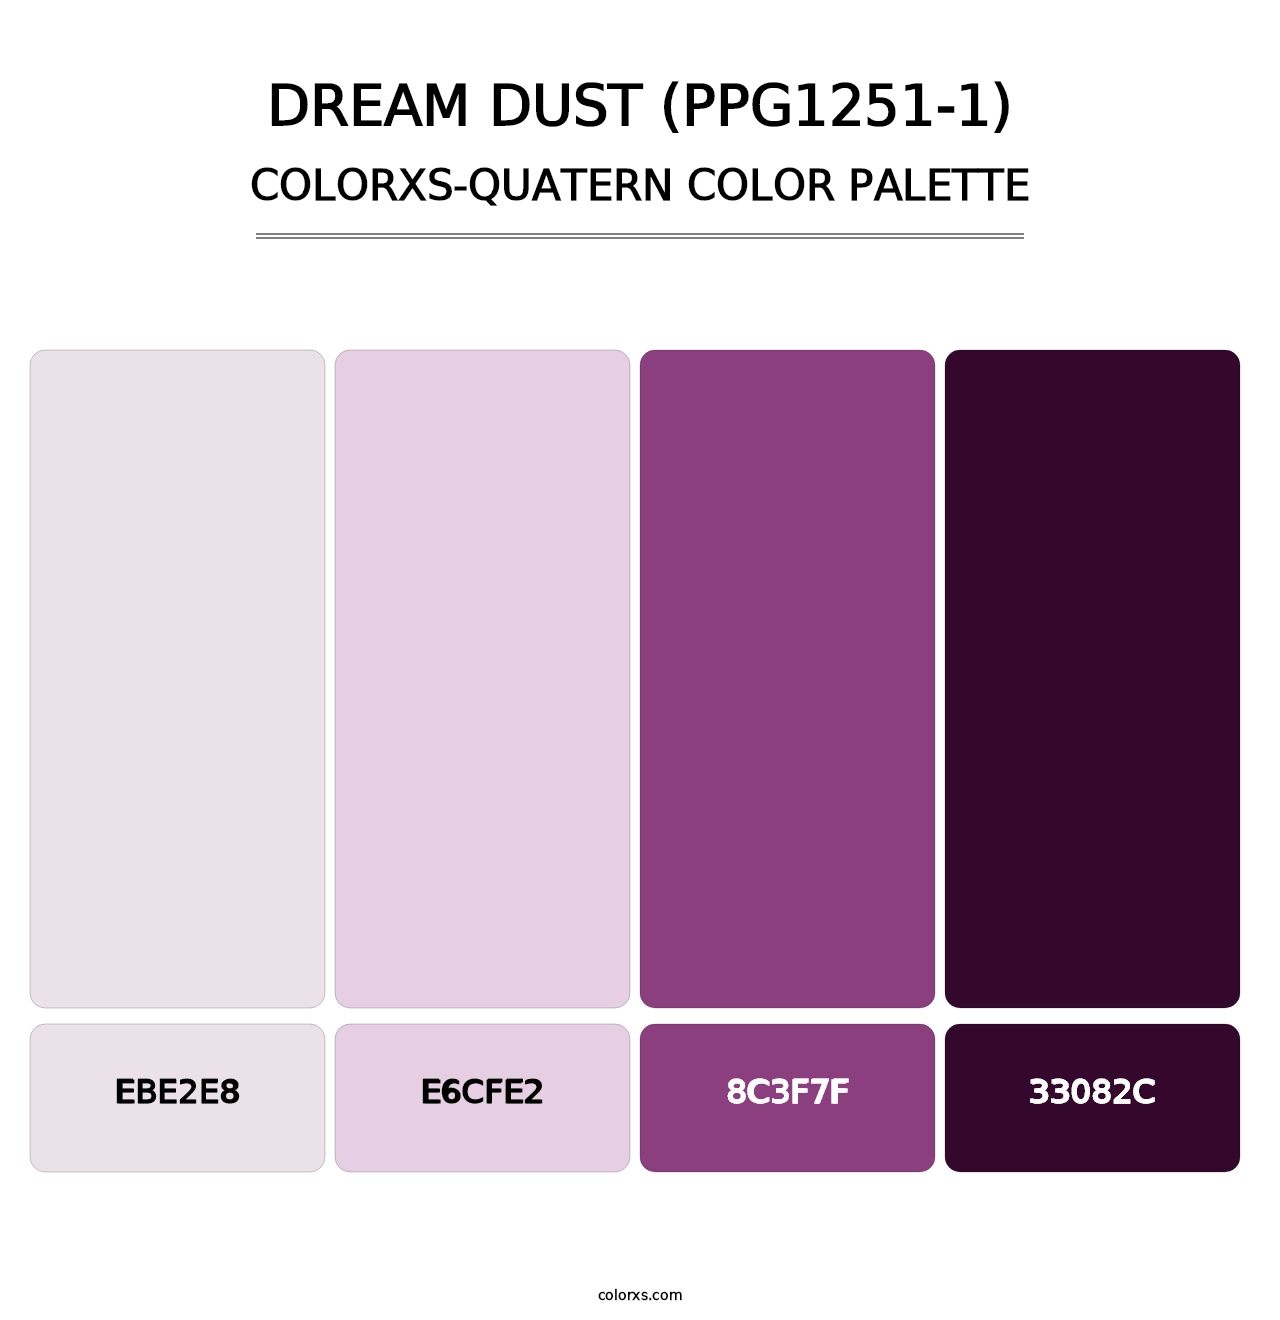 Dream Dust (PPG1251-1) - Colorxs Quatern Palette